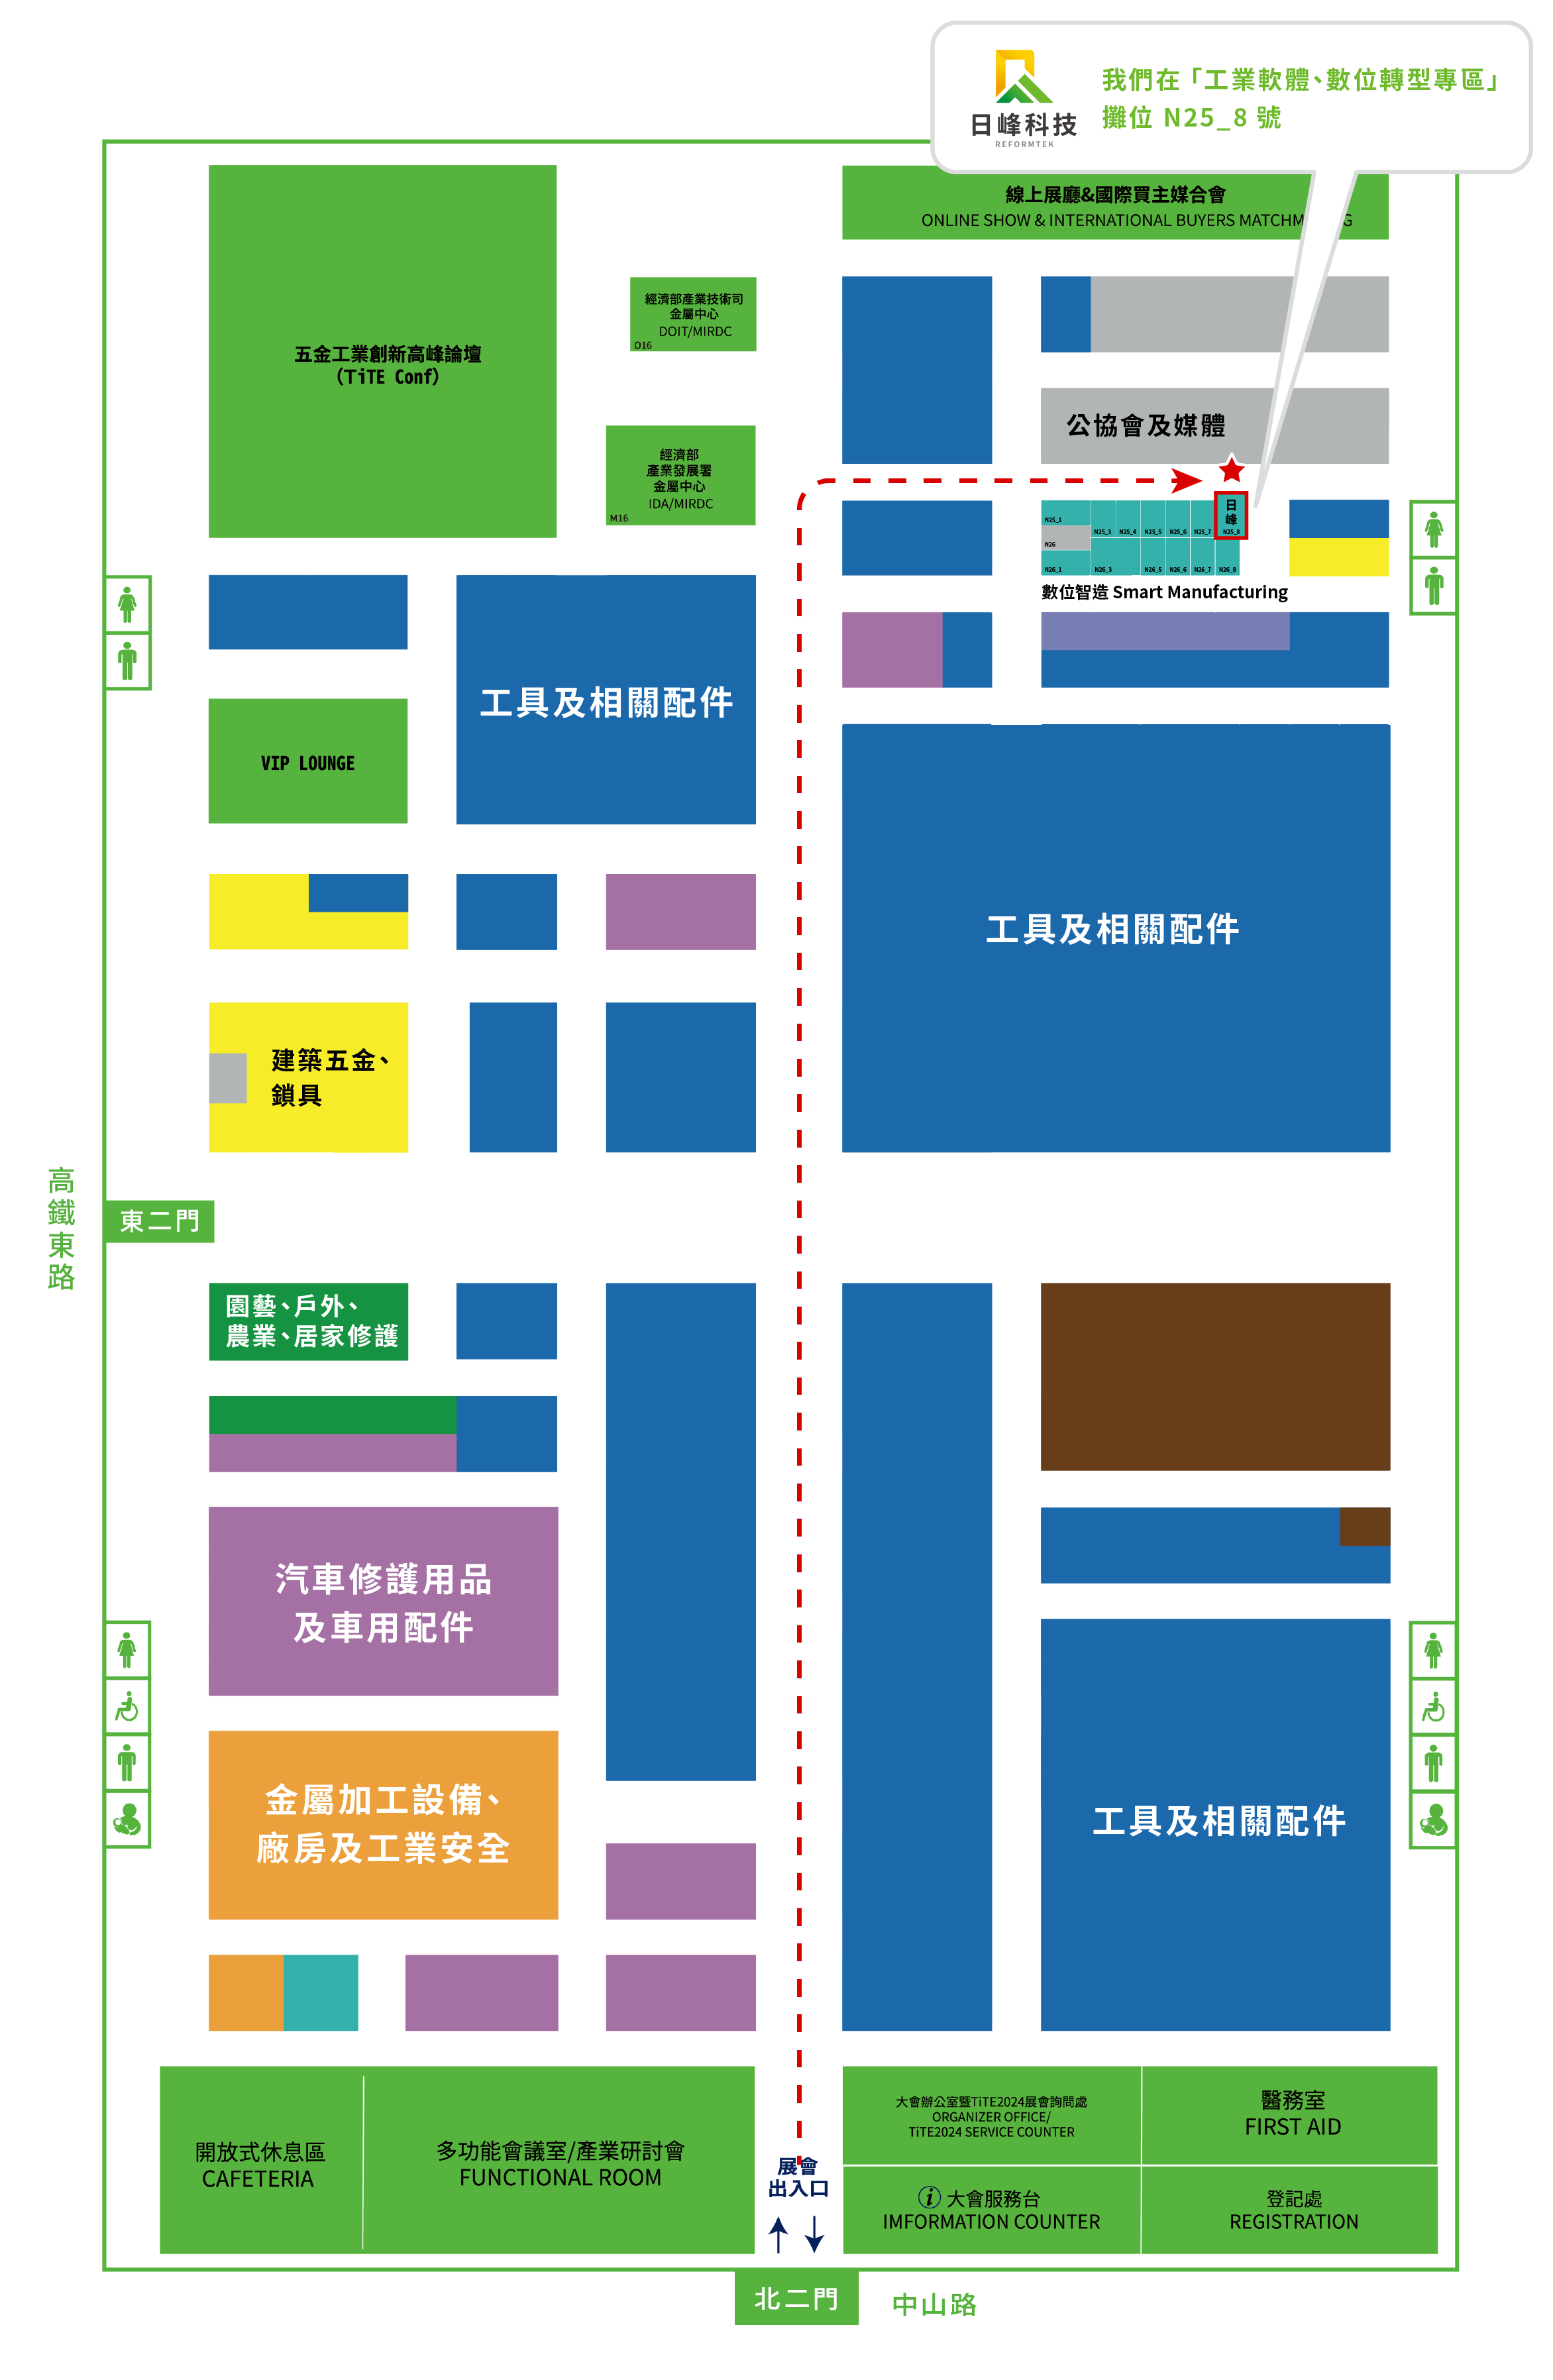 2023 台灣國際五金工具博覽會